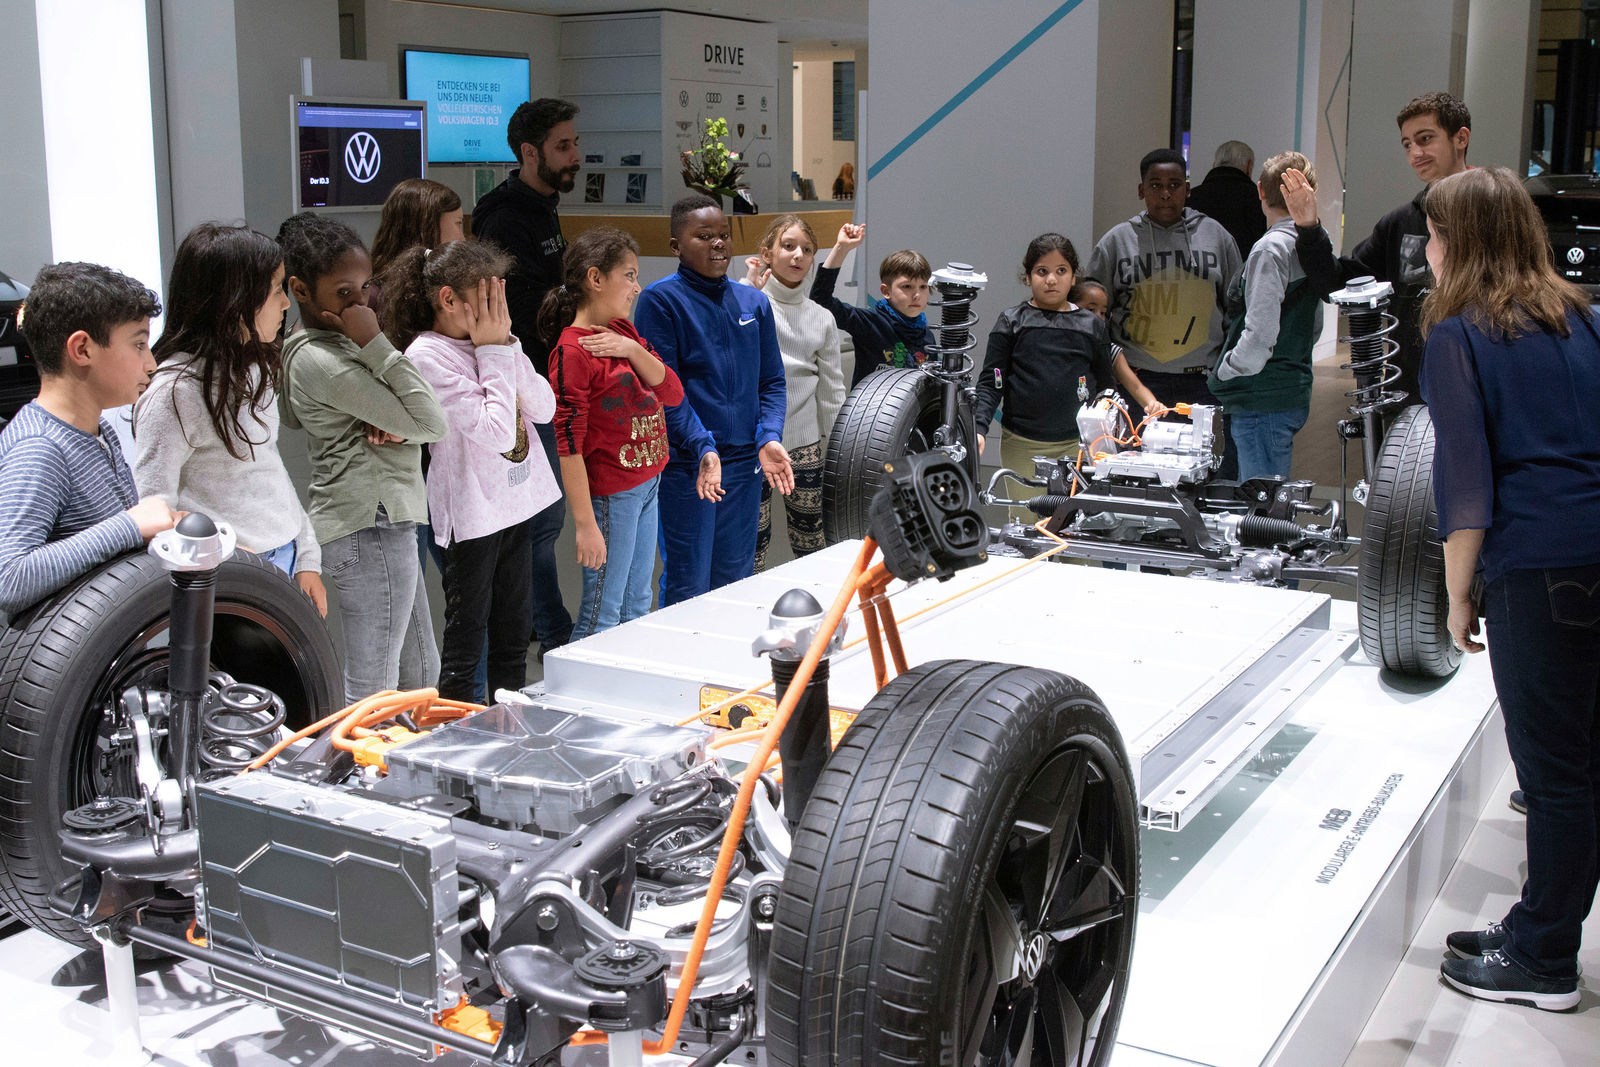 Kinder der Berliner Arche entdecken die Welt der Elektromobilität im DRIVE. Volkswagen Group Forum